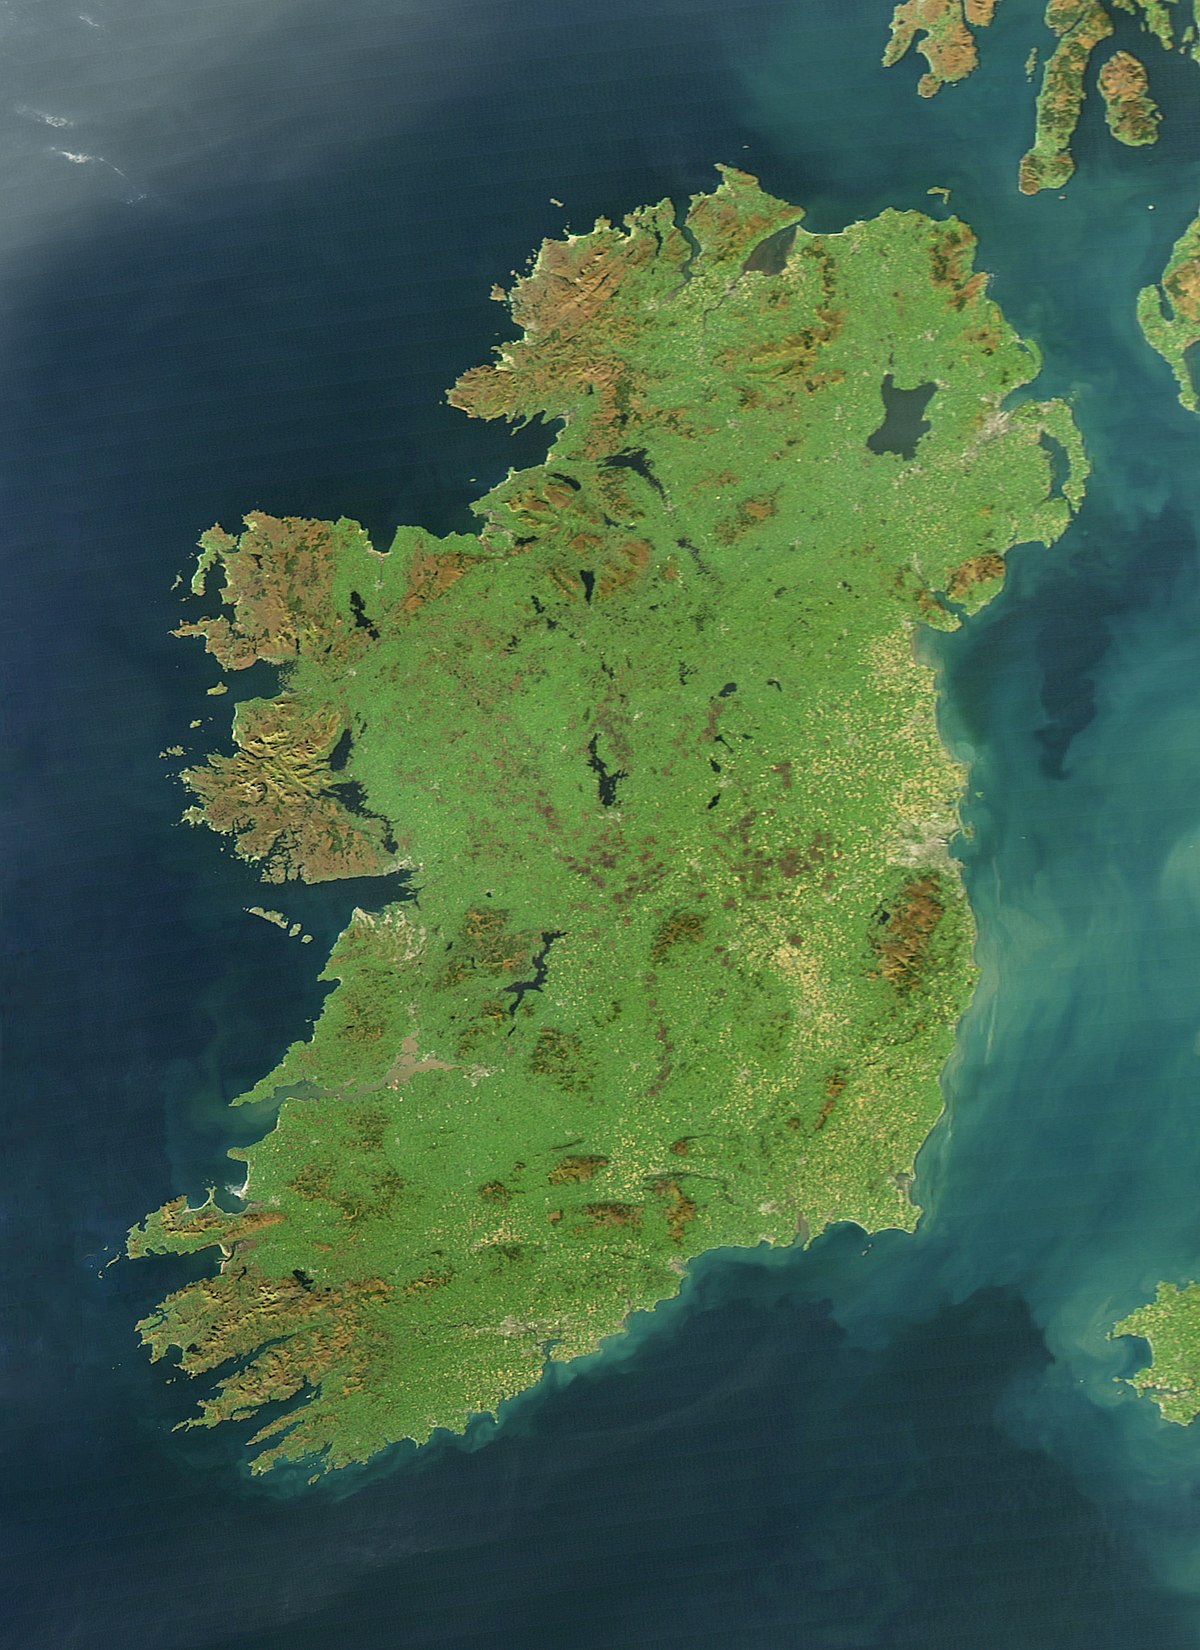 Geography of Ireland - Wikipedia